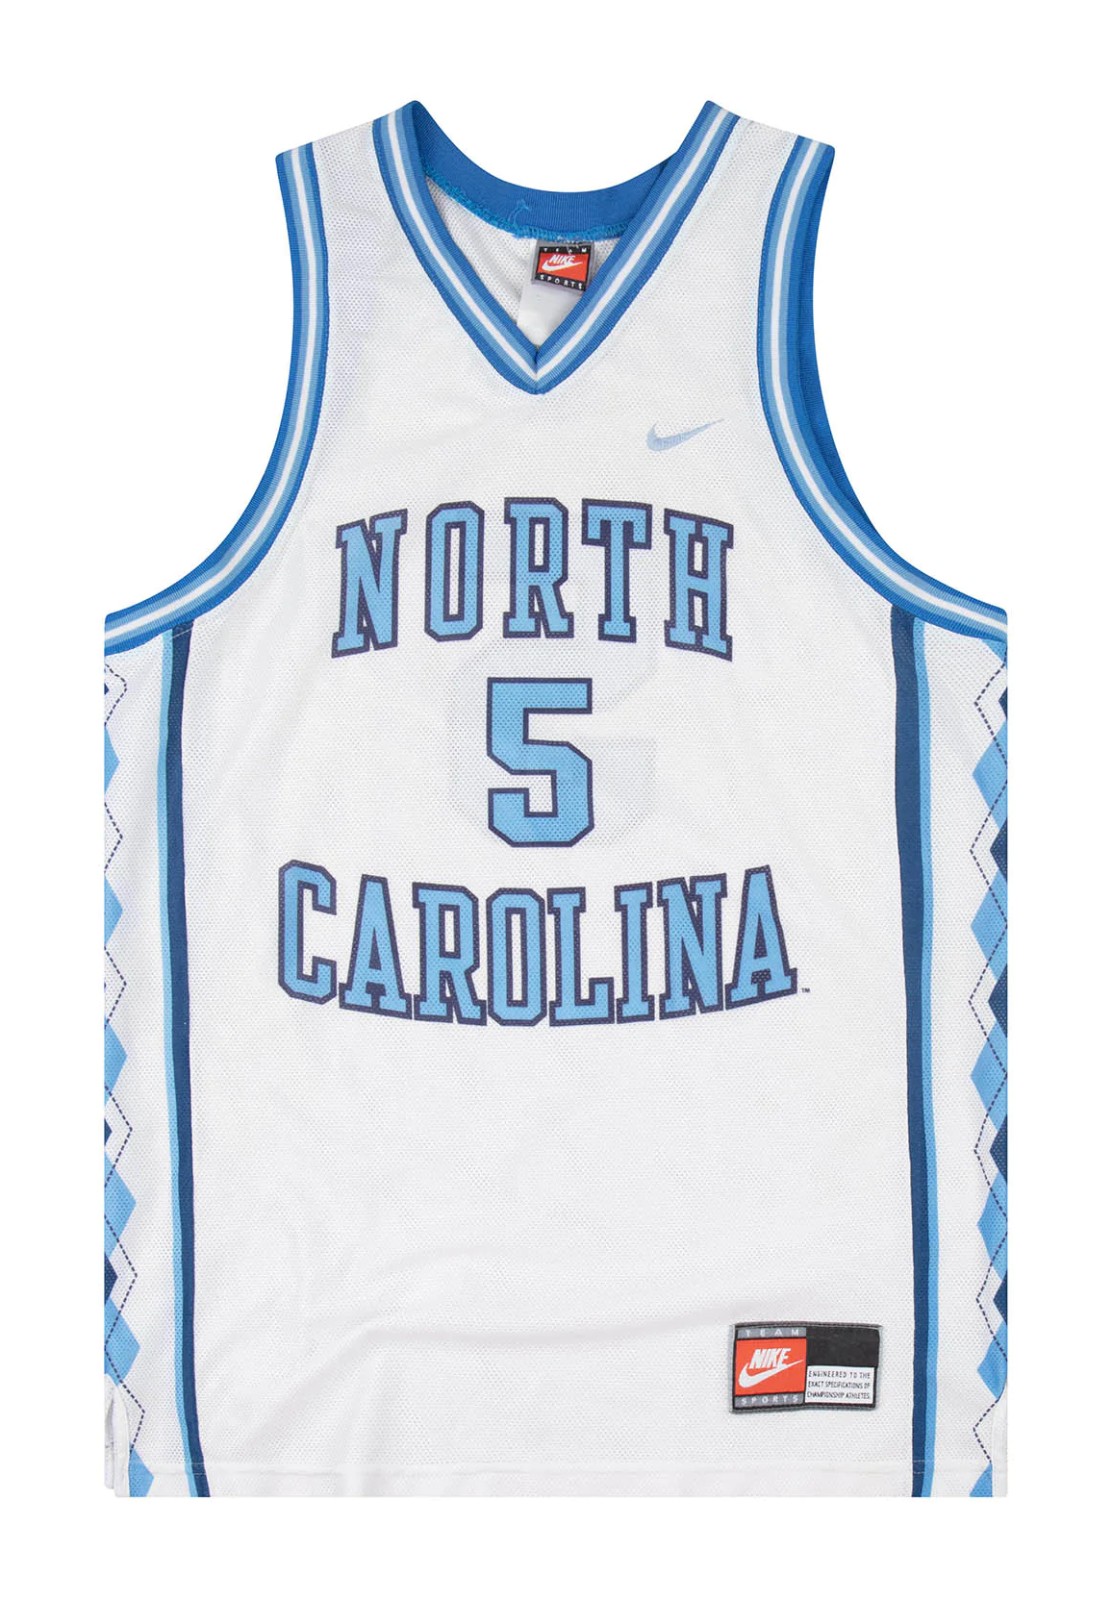 North Carolina Tar Heels 1997-98 Jerseys